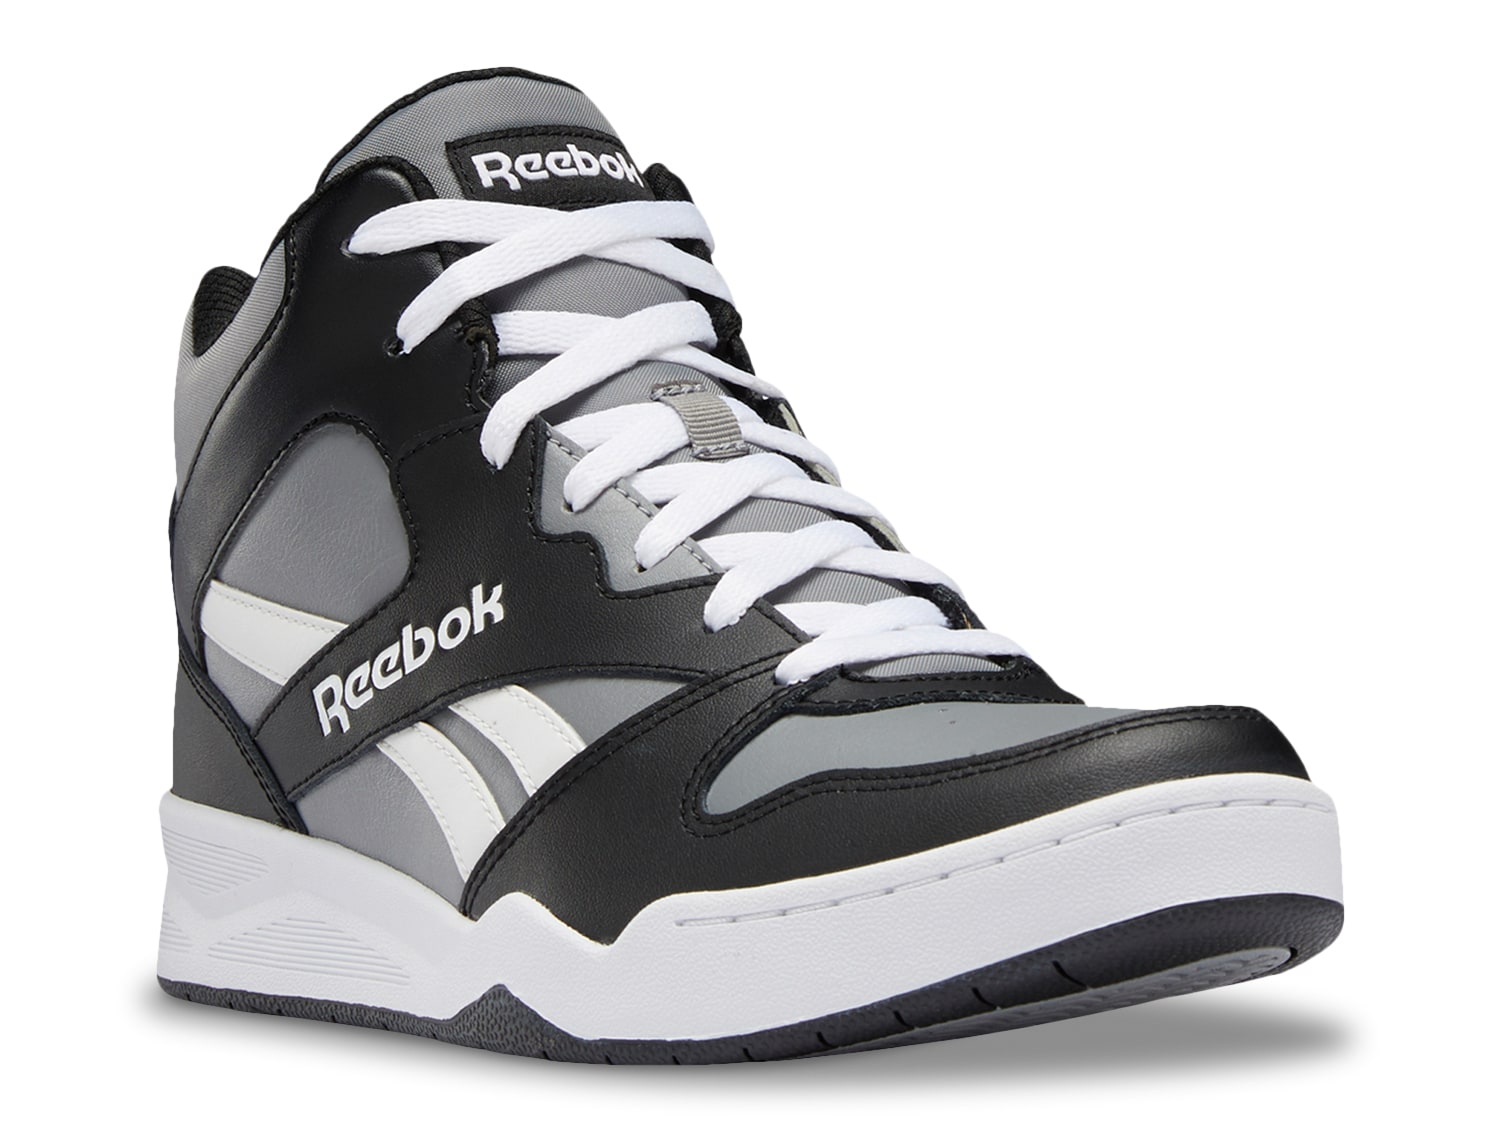 Reebok Royal BB4500 Low 2 Shoes in FTWWHT/CBLACK/FTWWHT